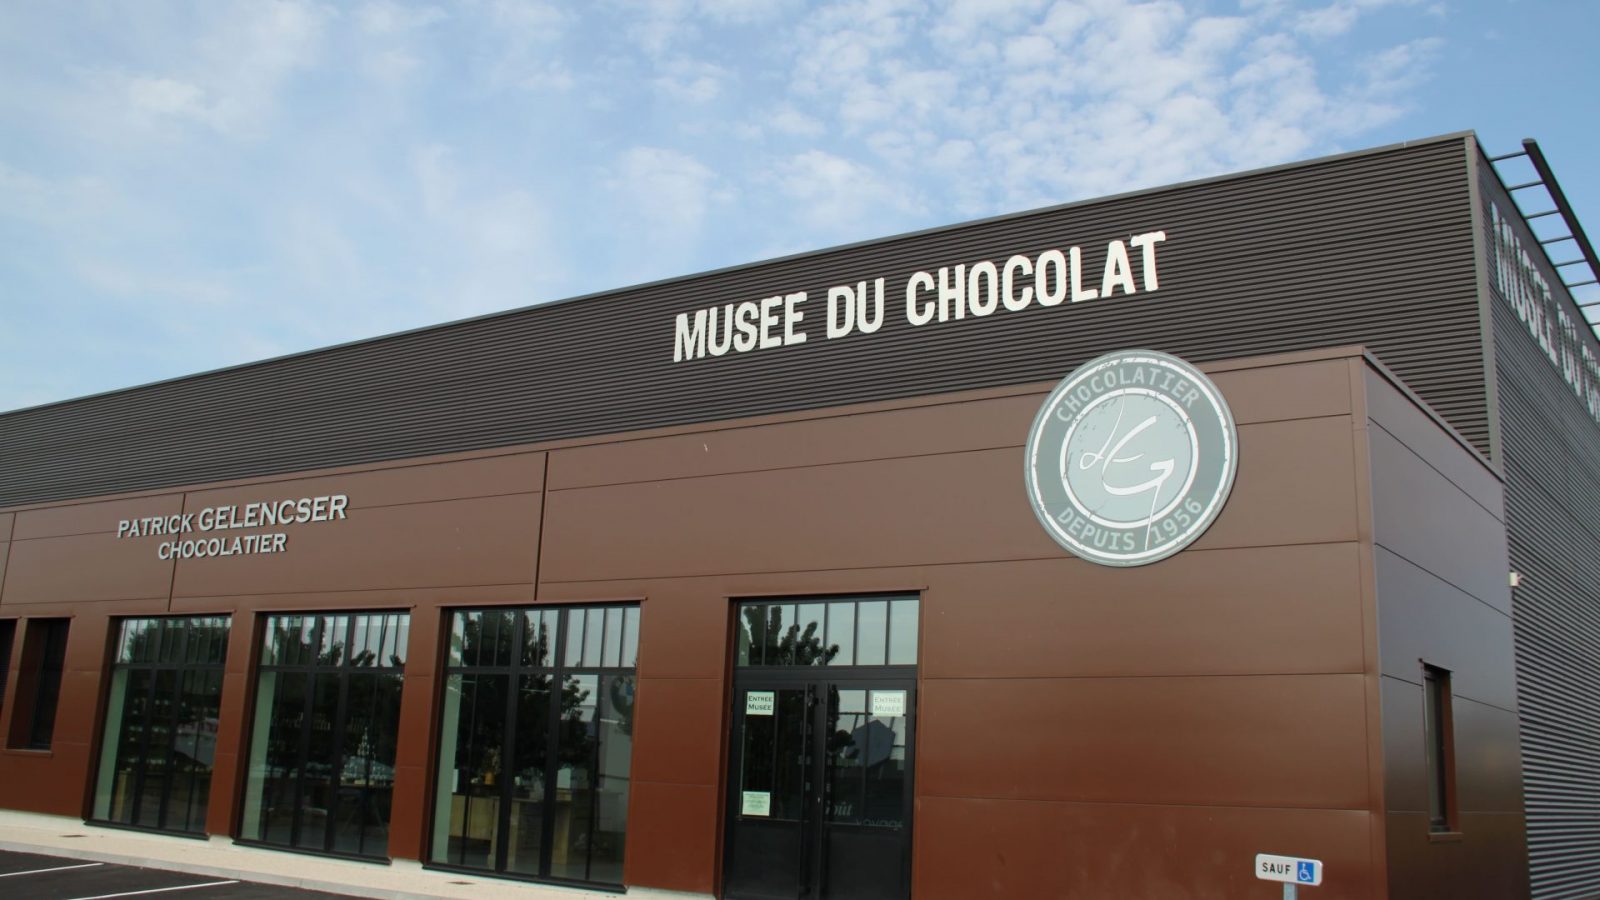 Musée du chocolat Gelencser, Destination La Roche-sur-Yon